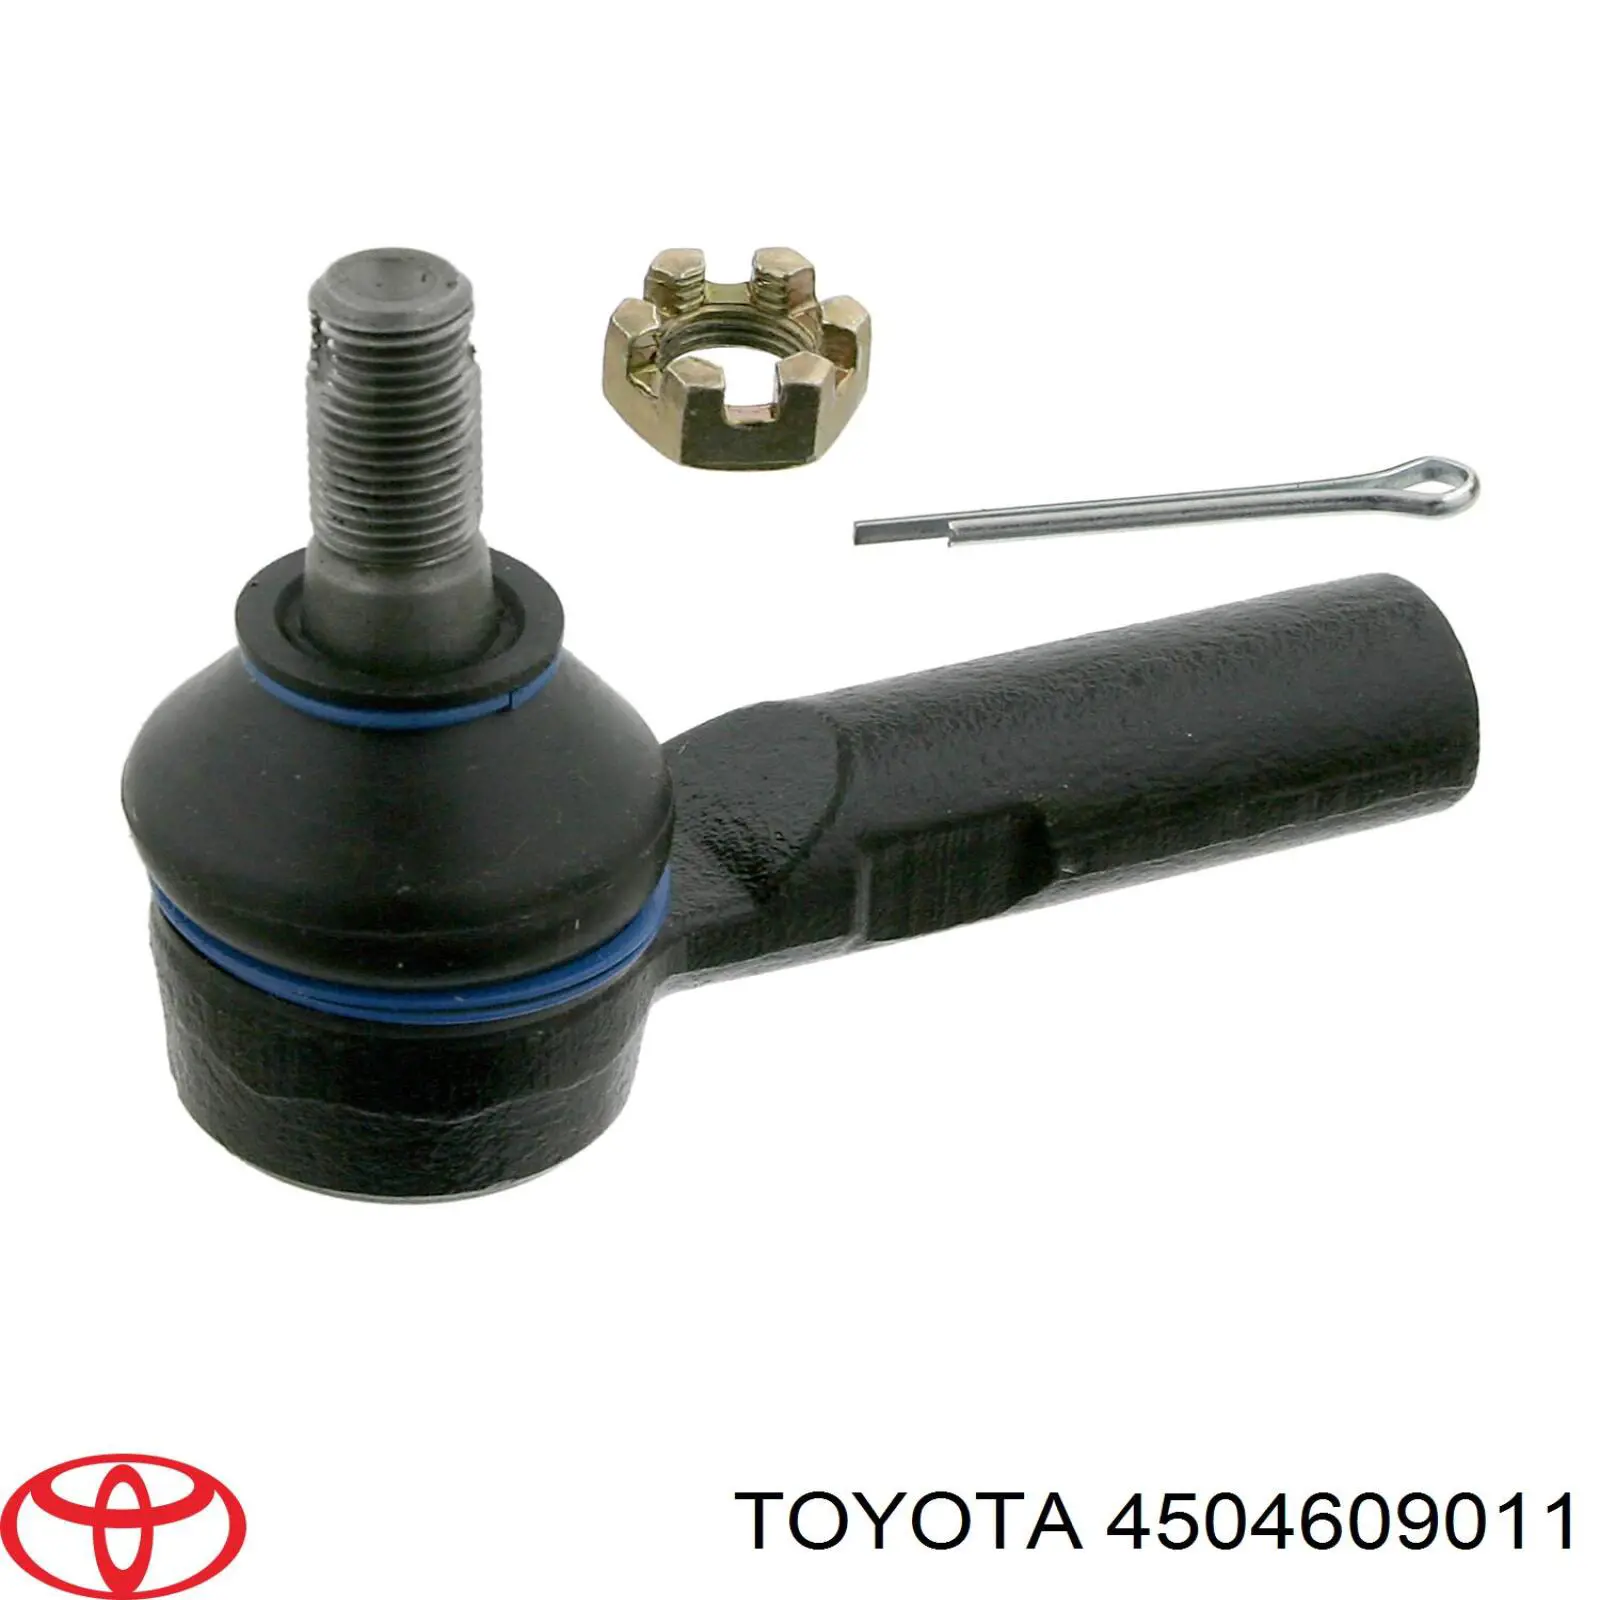 4504609011 Toyota rótula barra de acoplamiento exterior